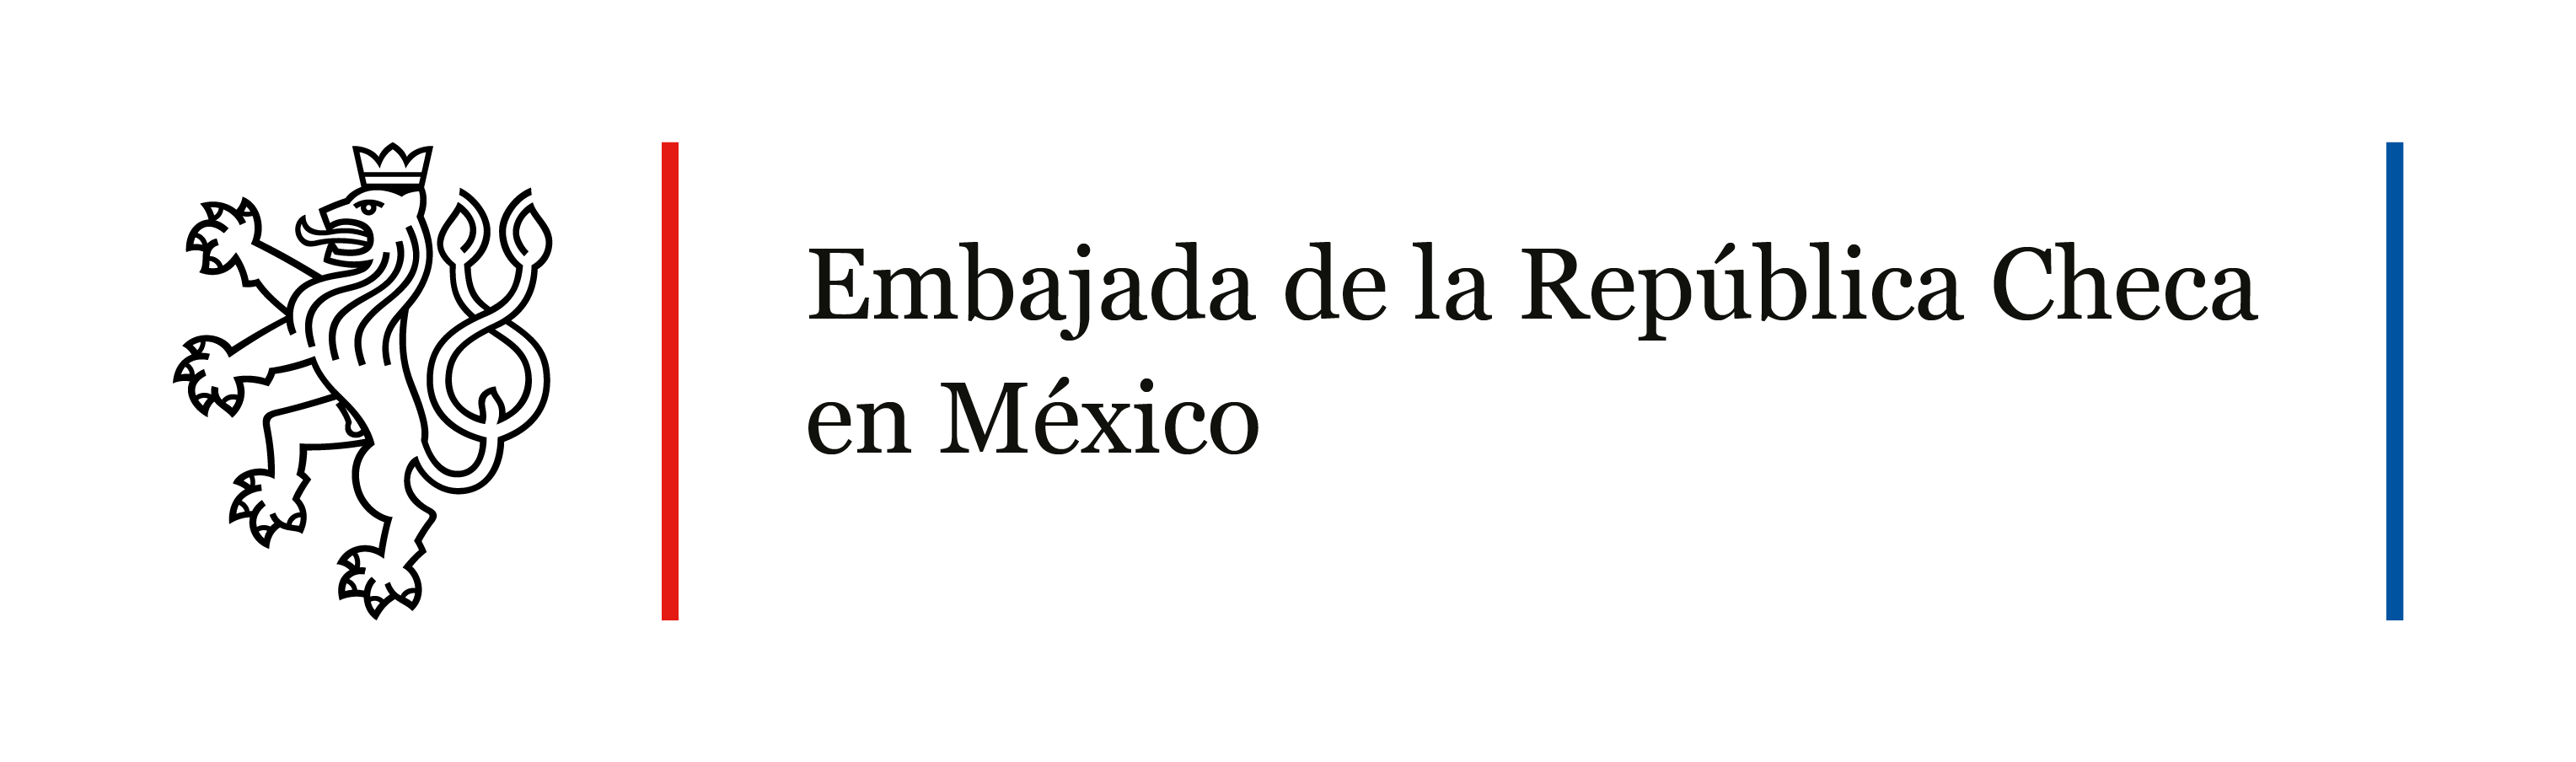 Embajada de República Checa en México